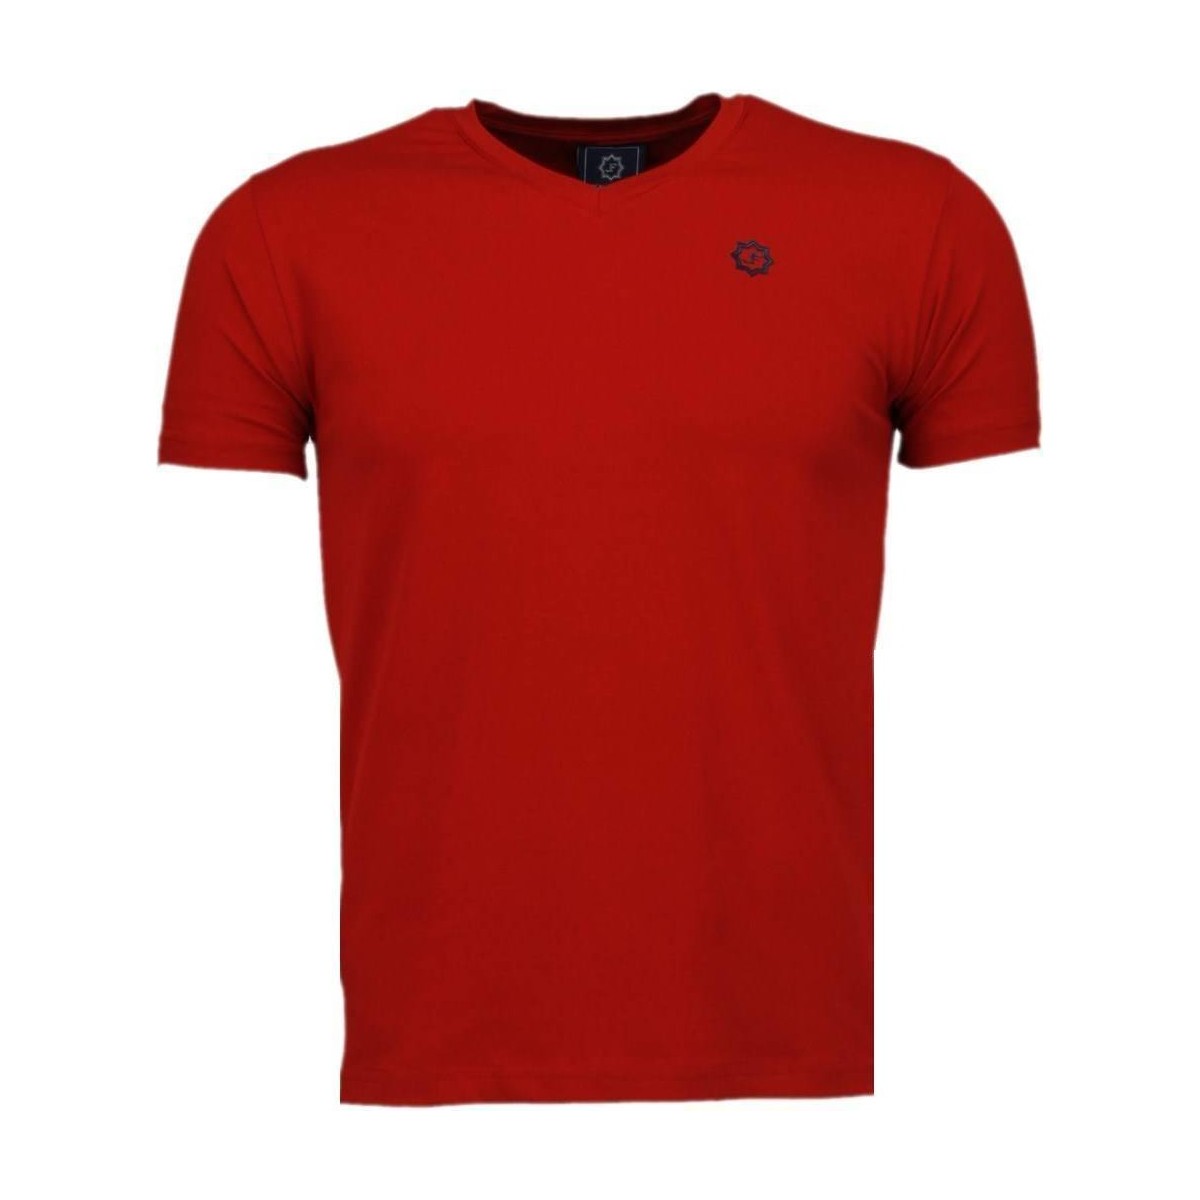 tekstylia Męskie T-shirty z krótkim rękawem Local Fanatic 25998438 Czerwony